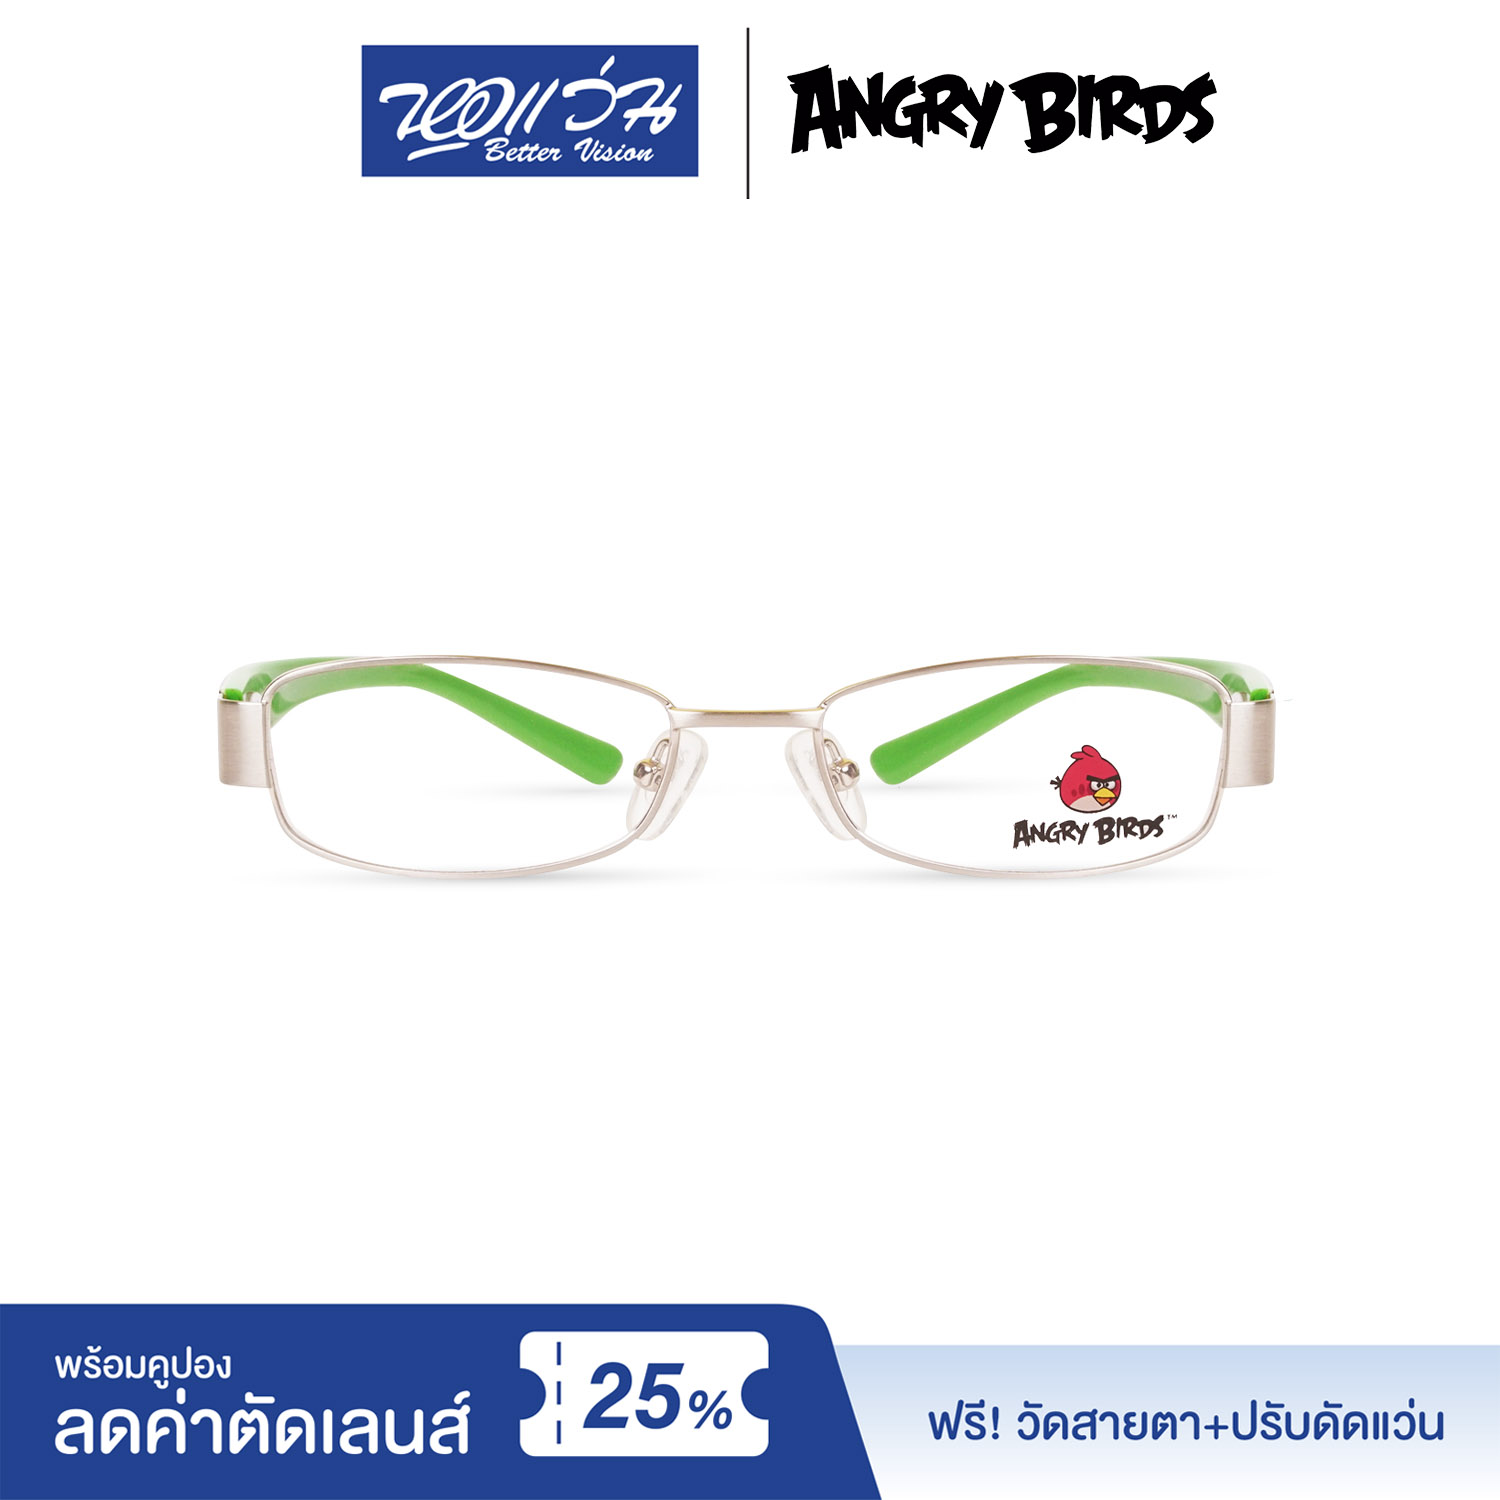 กรอบแว่นตาเด็ก แองกี้ เบิร์ด ANGRY BIRDS Child glasses แถมฟรีส่วนลดค่าตัดเลนส์ 25%  free 25% lens discount รุ่น FAG32201